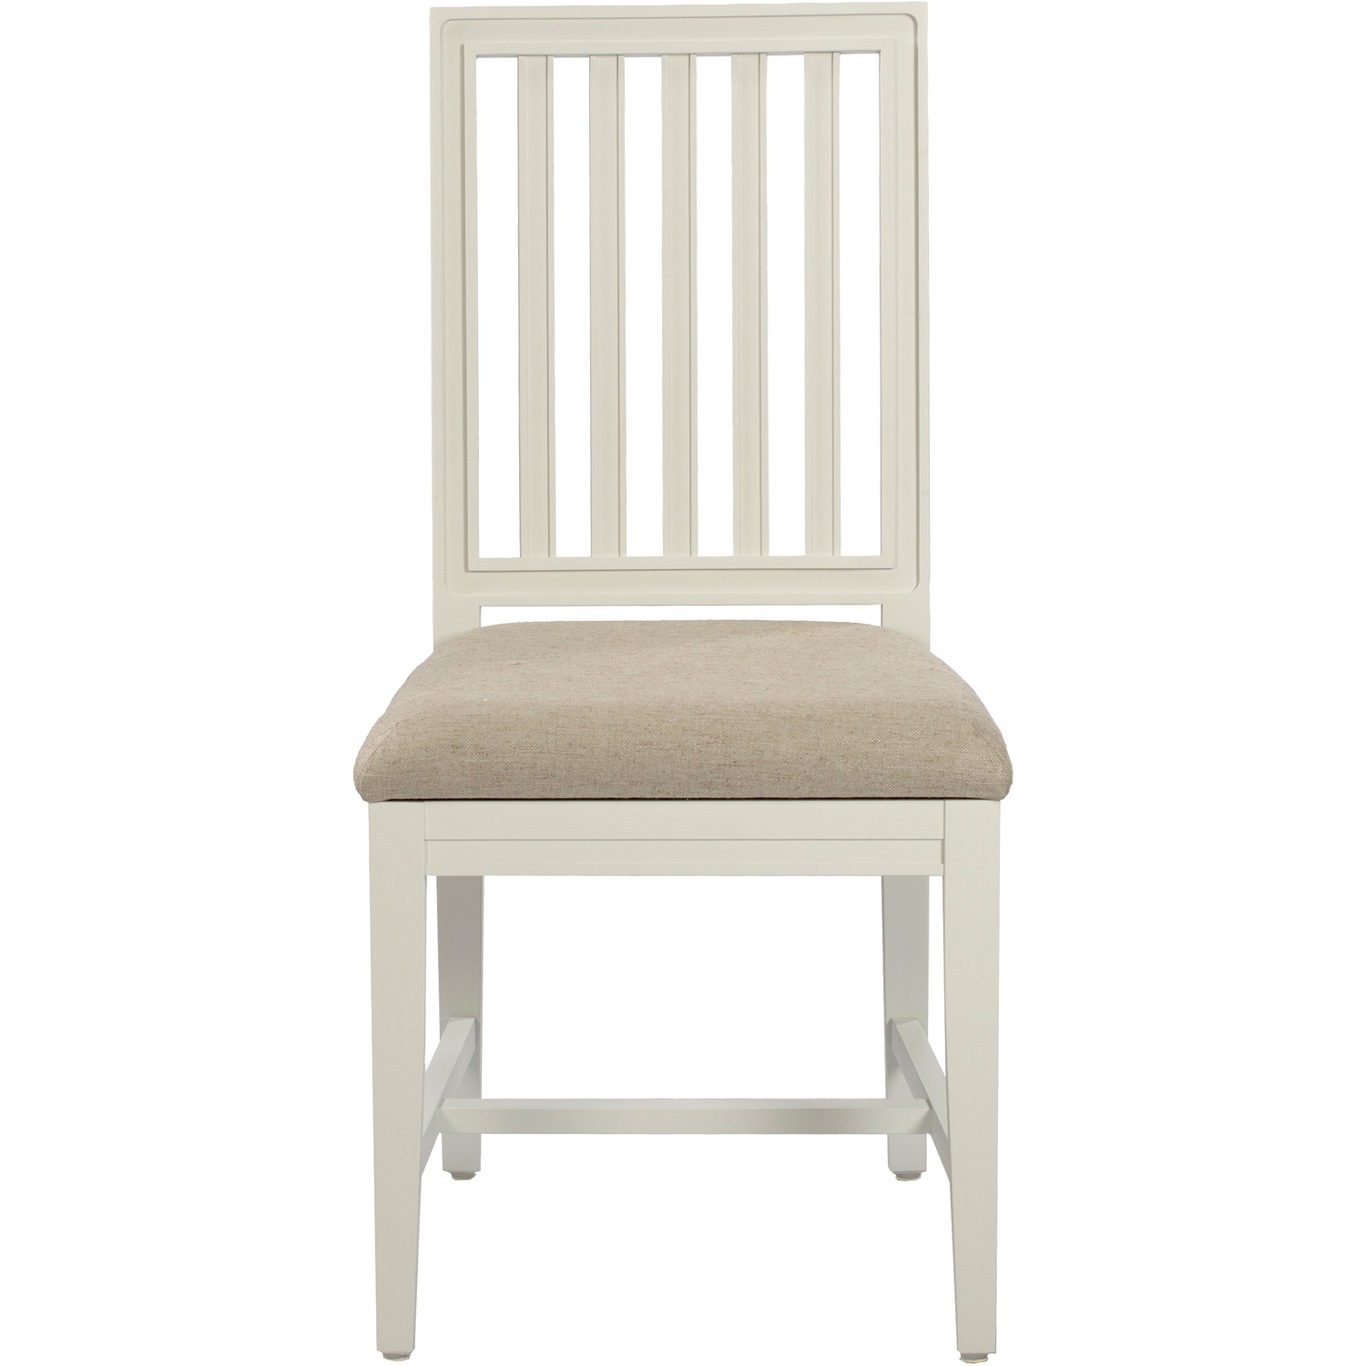 Classic Chair 2.0, Whitewash / Piquet Clay 84